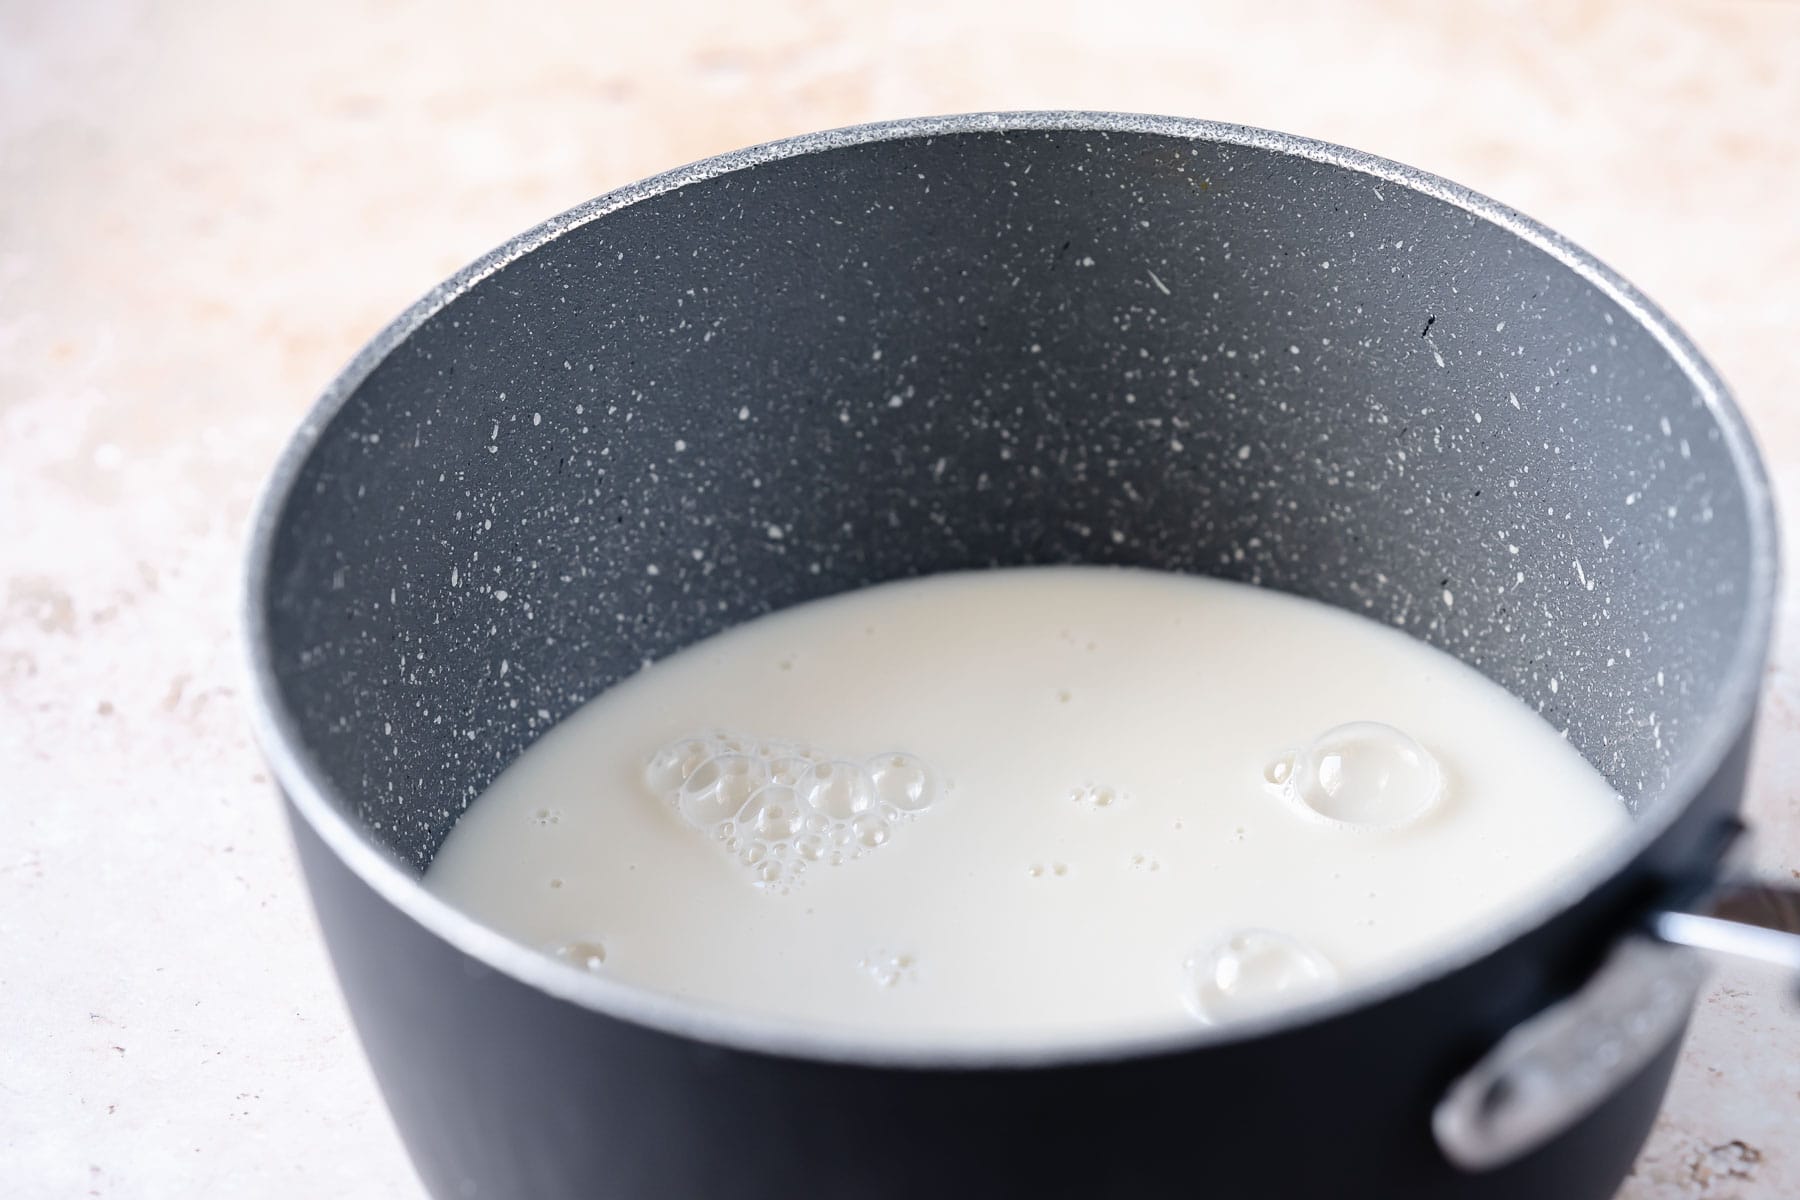 A dark gray saucepan filled with a white liquid.